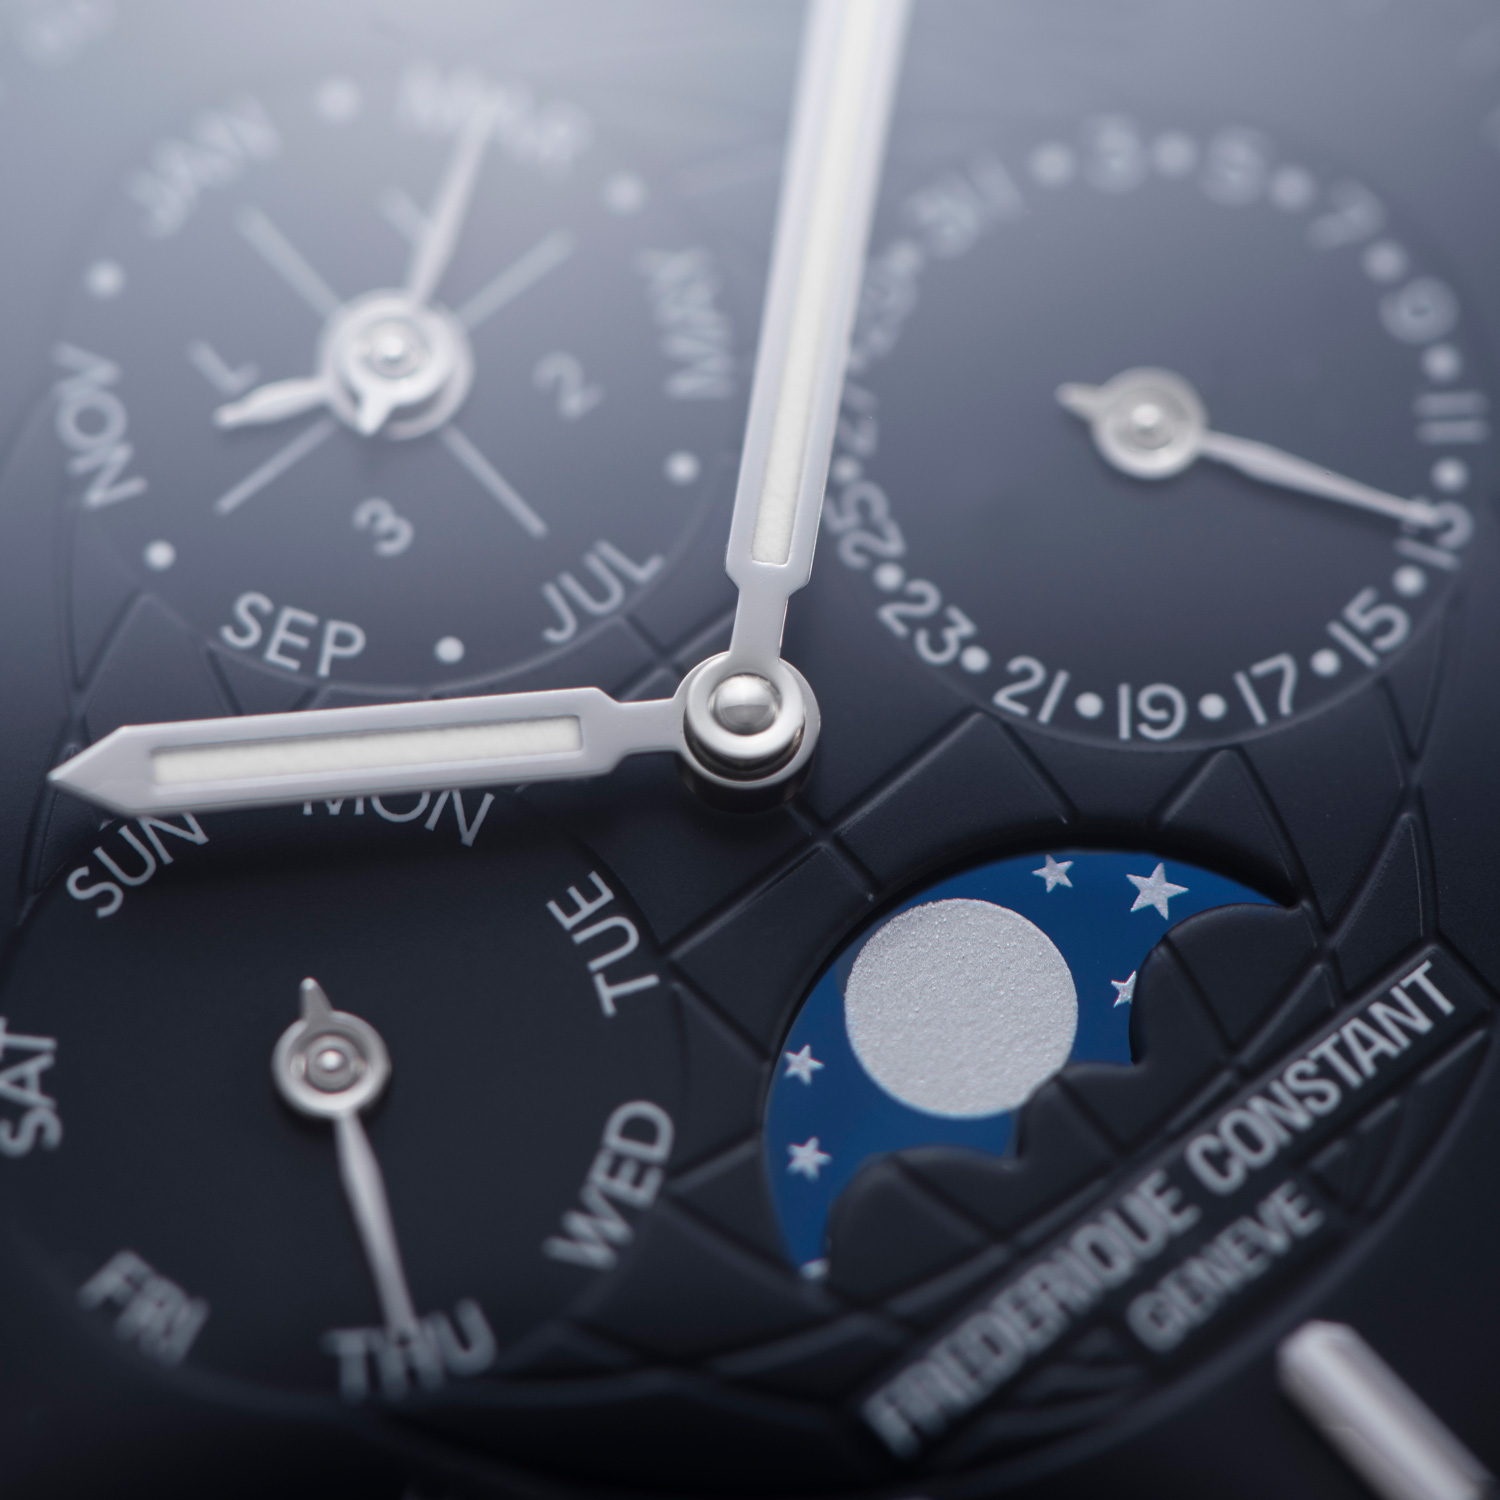 Frederique Constant, manifattura orologiera svizzera, propone una nuova versione dell'Highlife Perpetual Calendar Manufacture.  